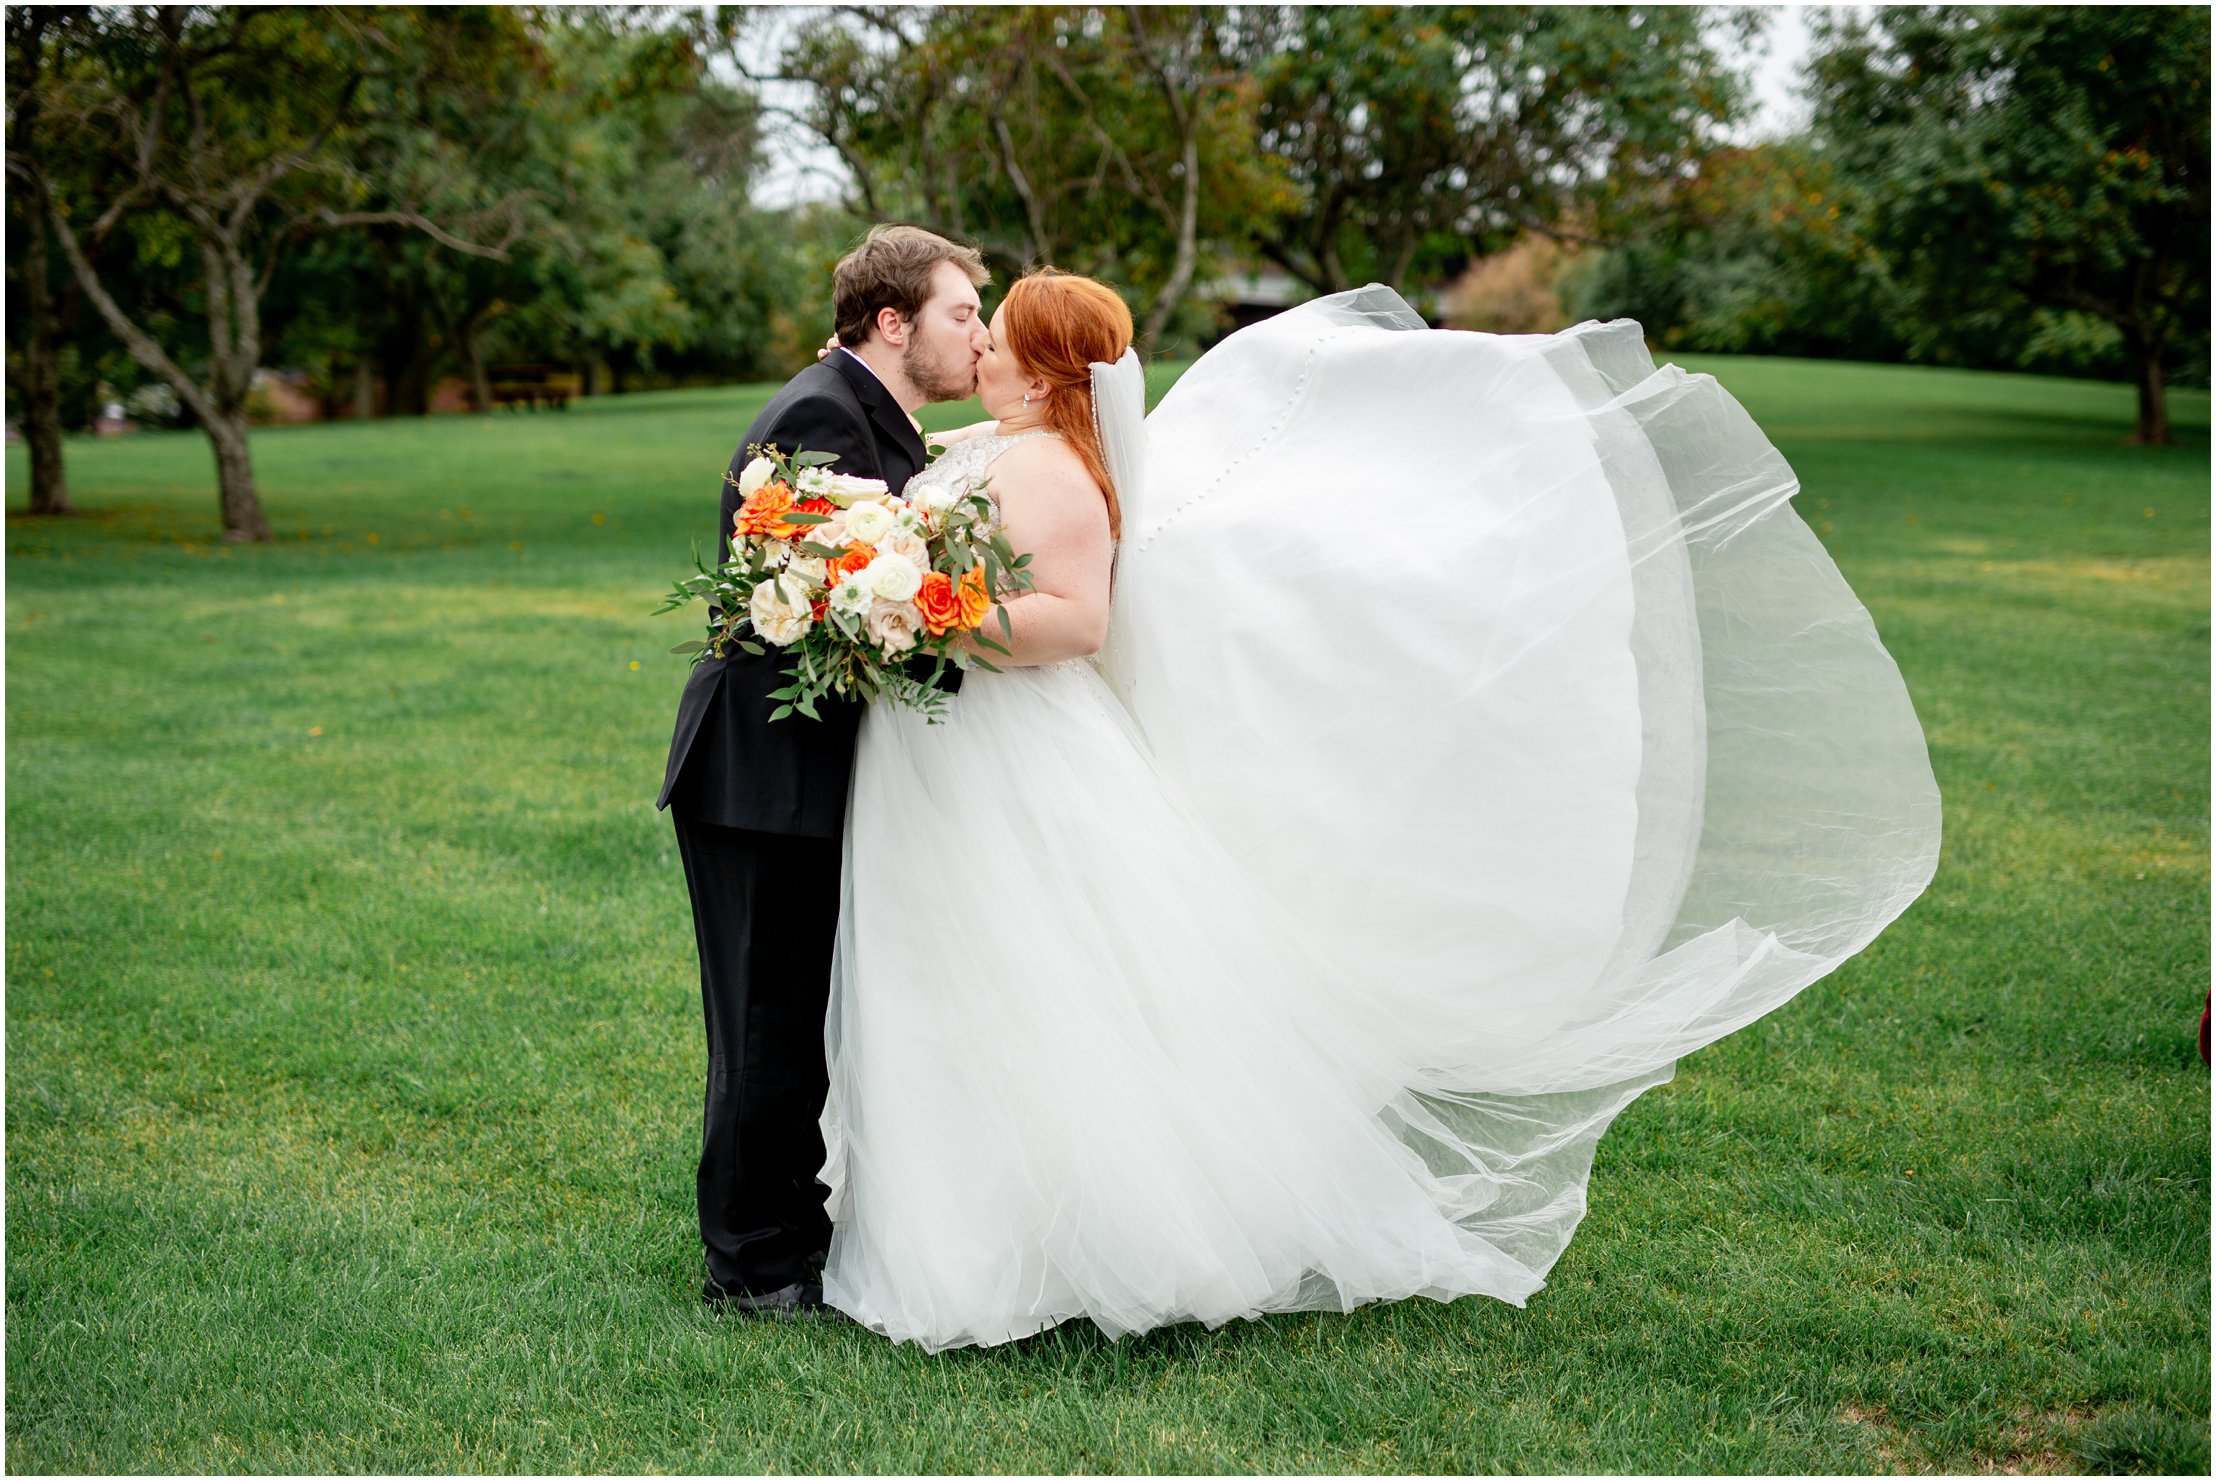 Council-Bluffs-Wedding-Photographer-70.jpg